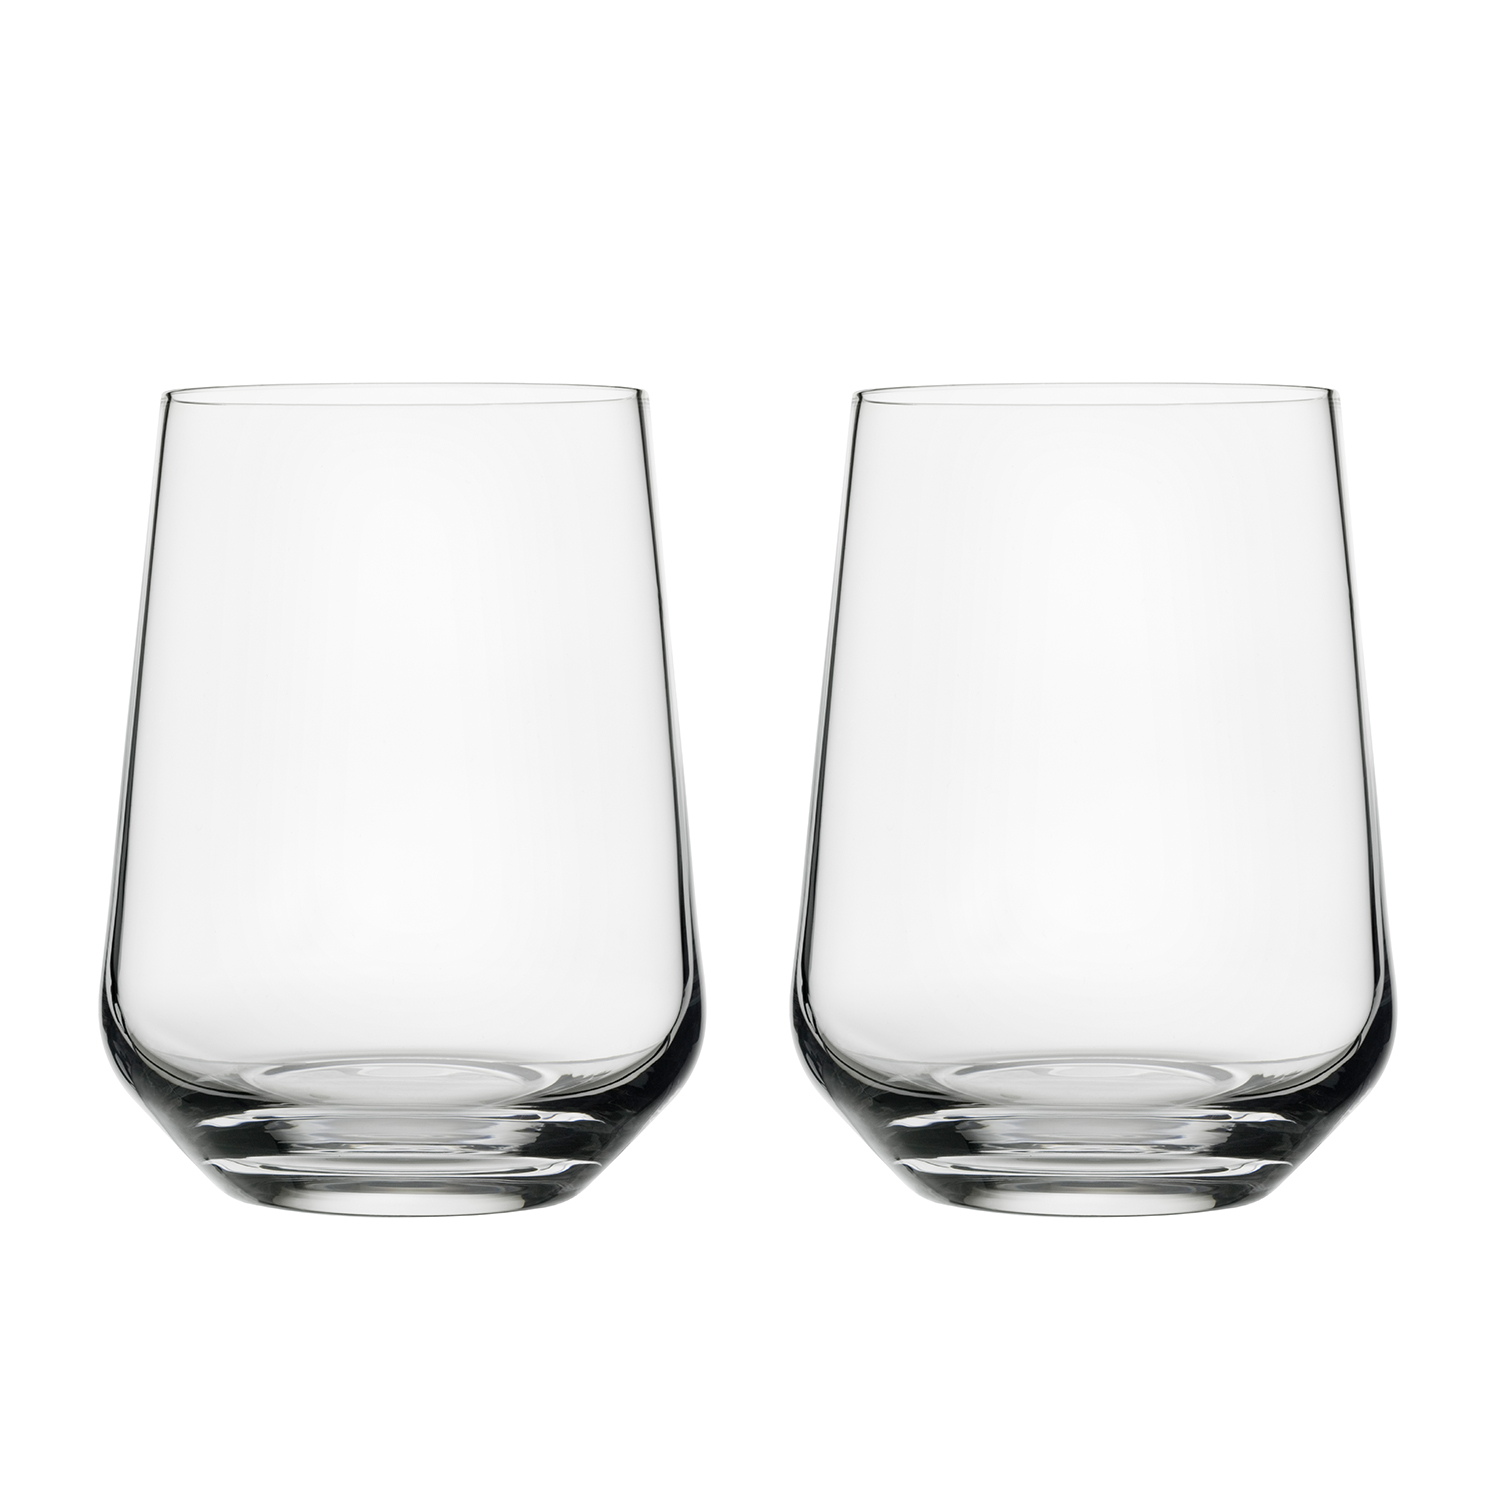 https://api-prod.royaldesign.se/api/products/image/10/iittala-essence-drinking-glass-2-pack-3